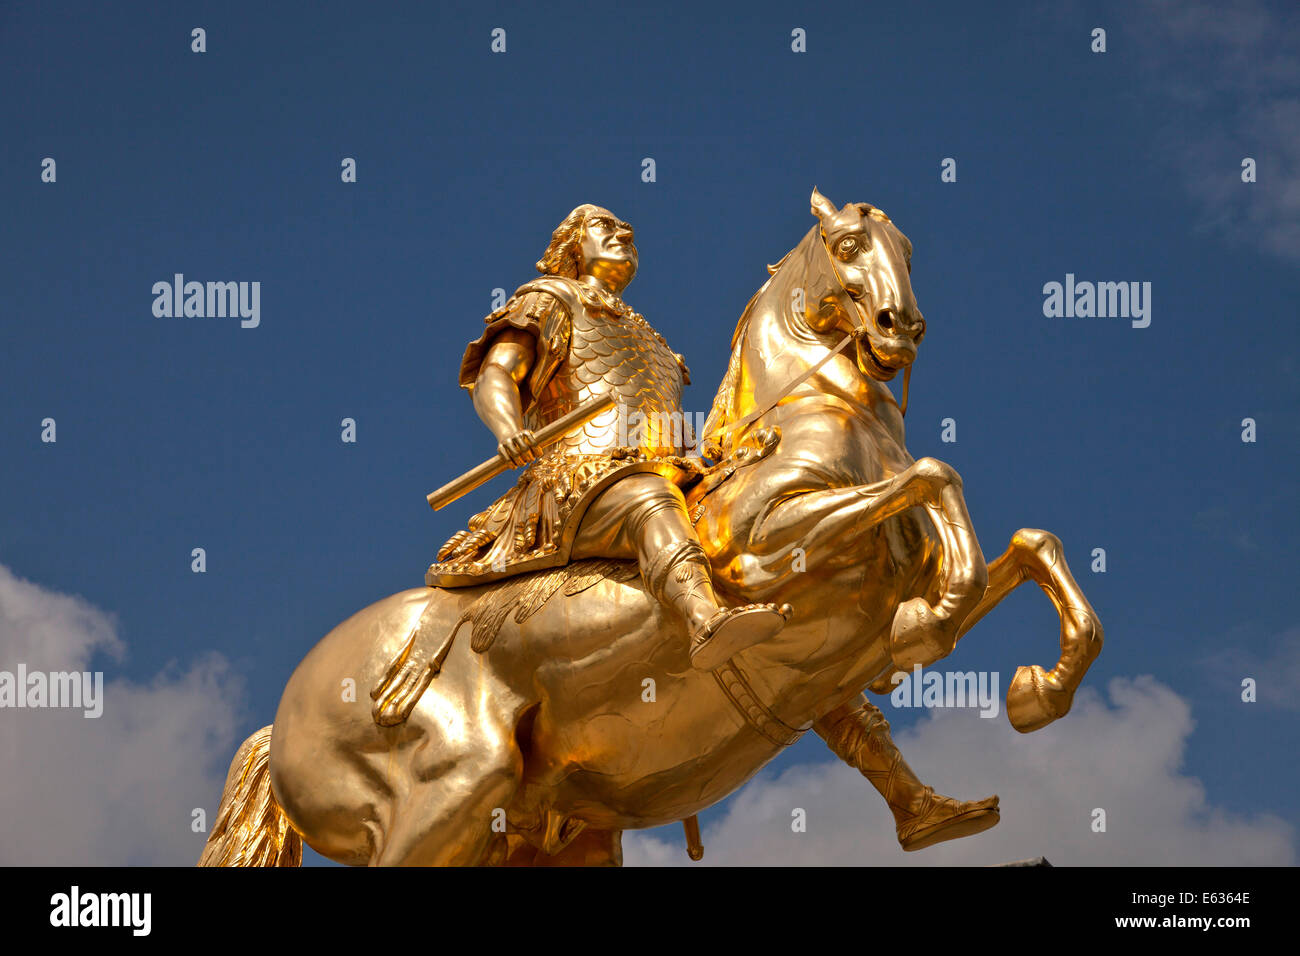 Il Goldener Reiter o Golden Rider, un dorato statua equestre di Augusto il Forte a Dresda in Sassonia, Germania, Europa Foto Stock